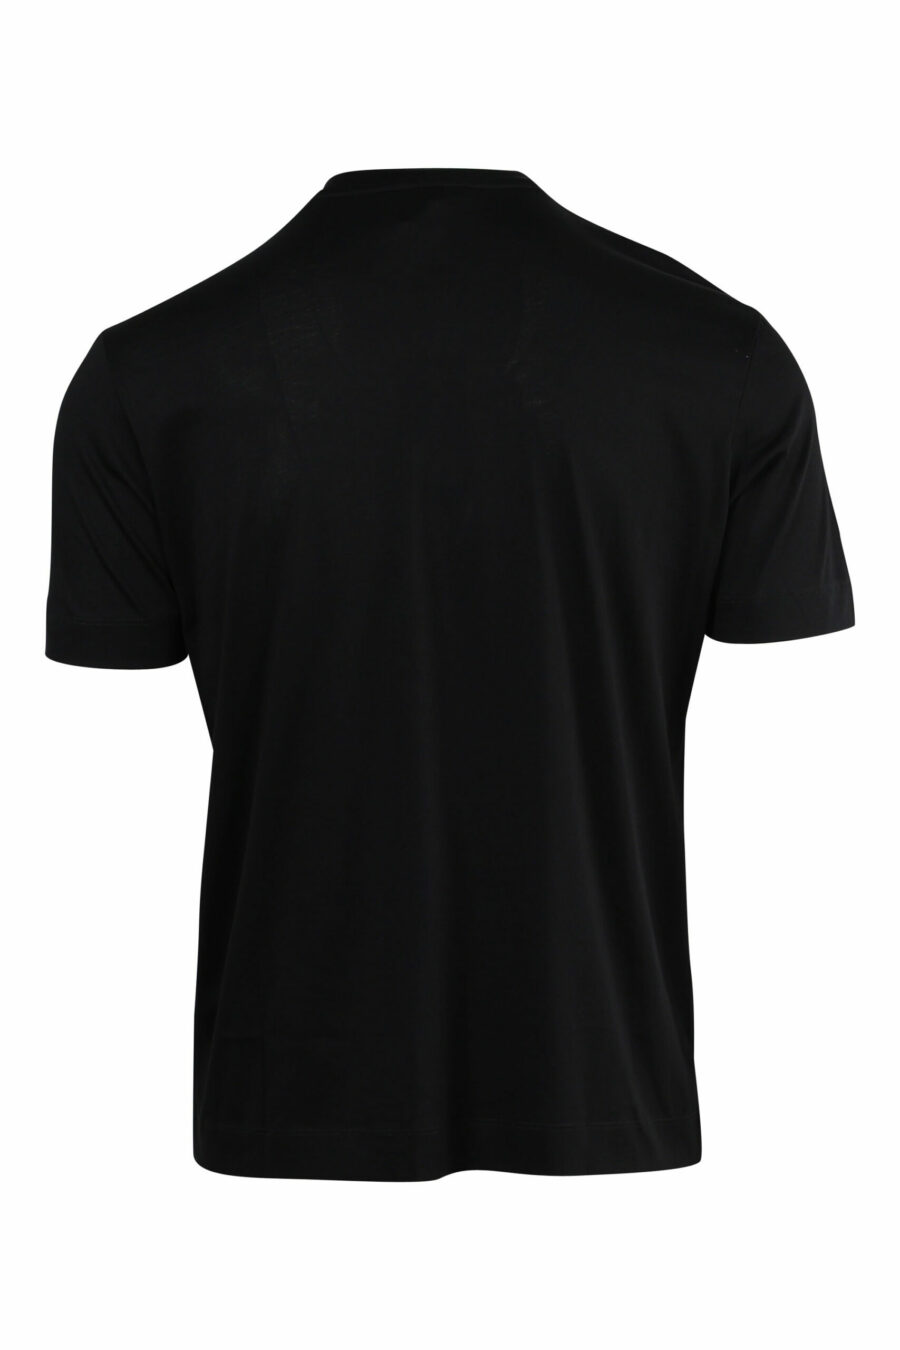 Camiseta negra con maxilogo águila en relieve - 8057970433729 1 scaled